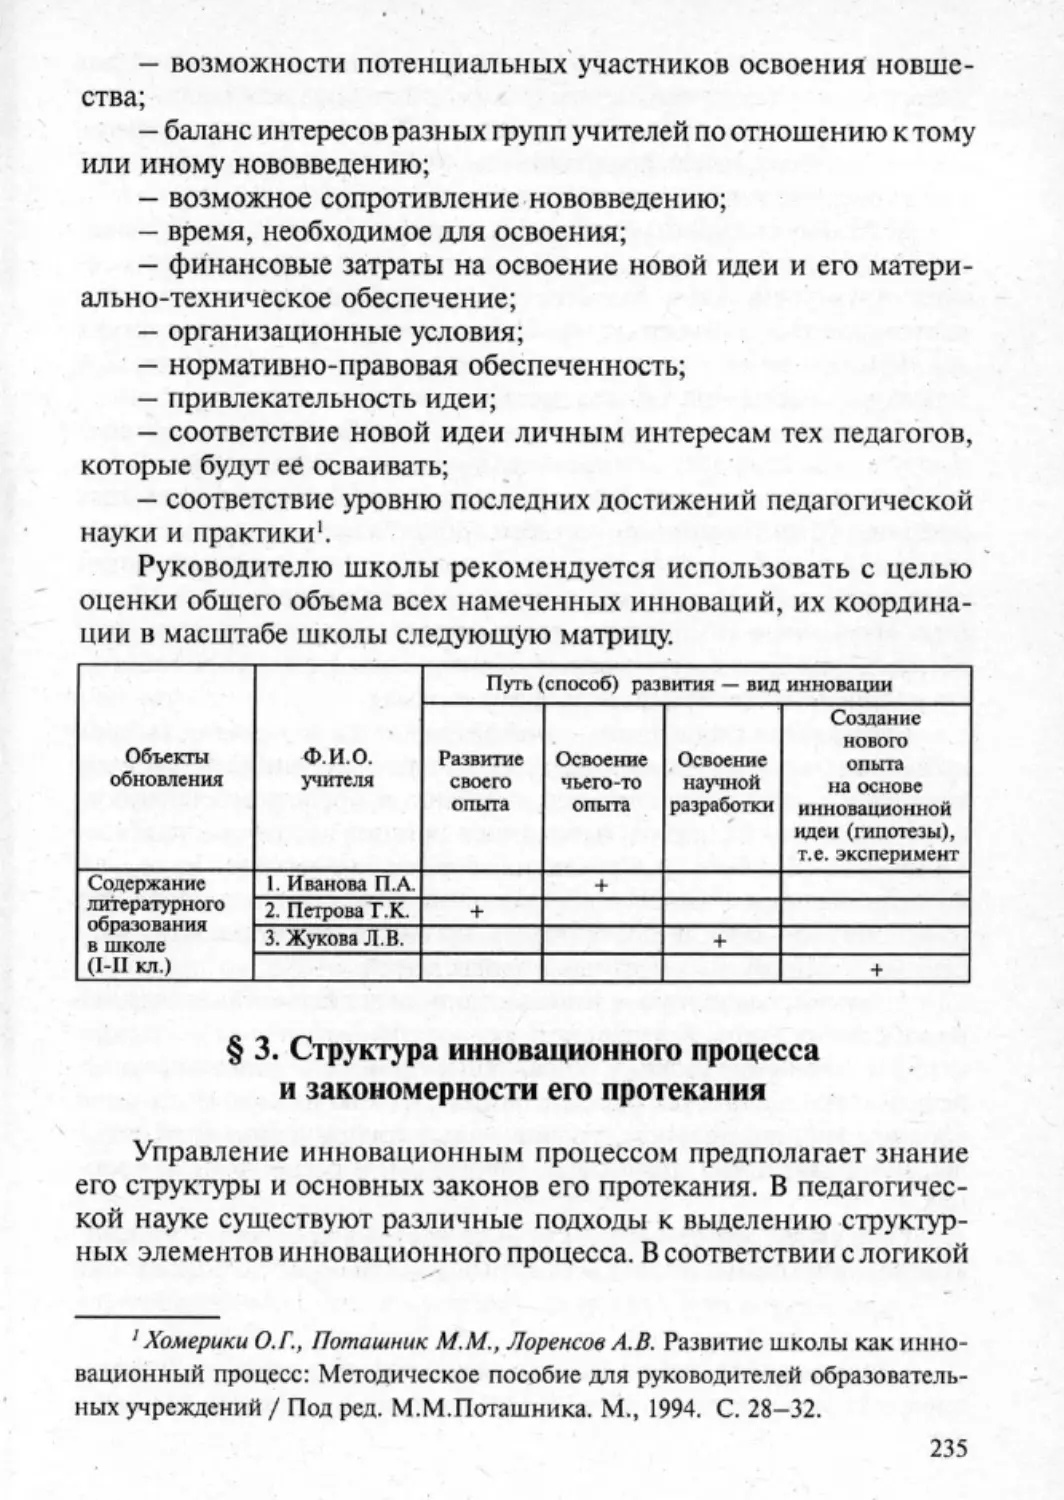 Загрекова Л.В., Николаева В.В - 0236